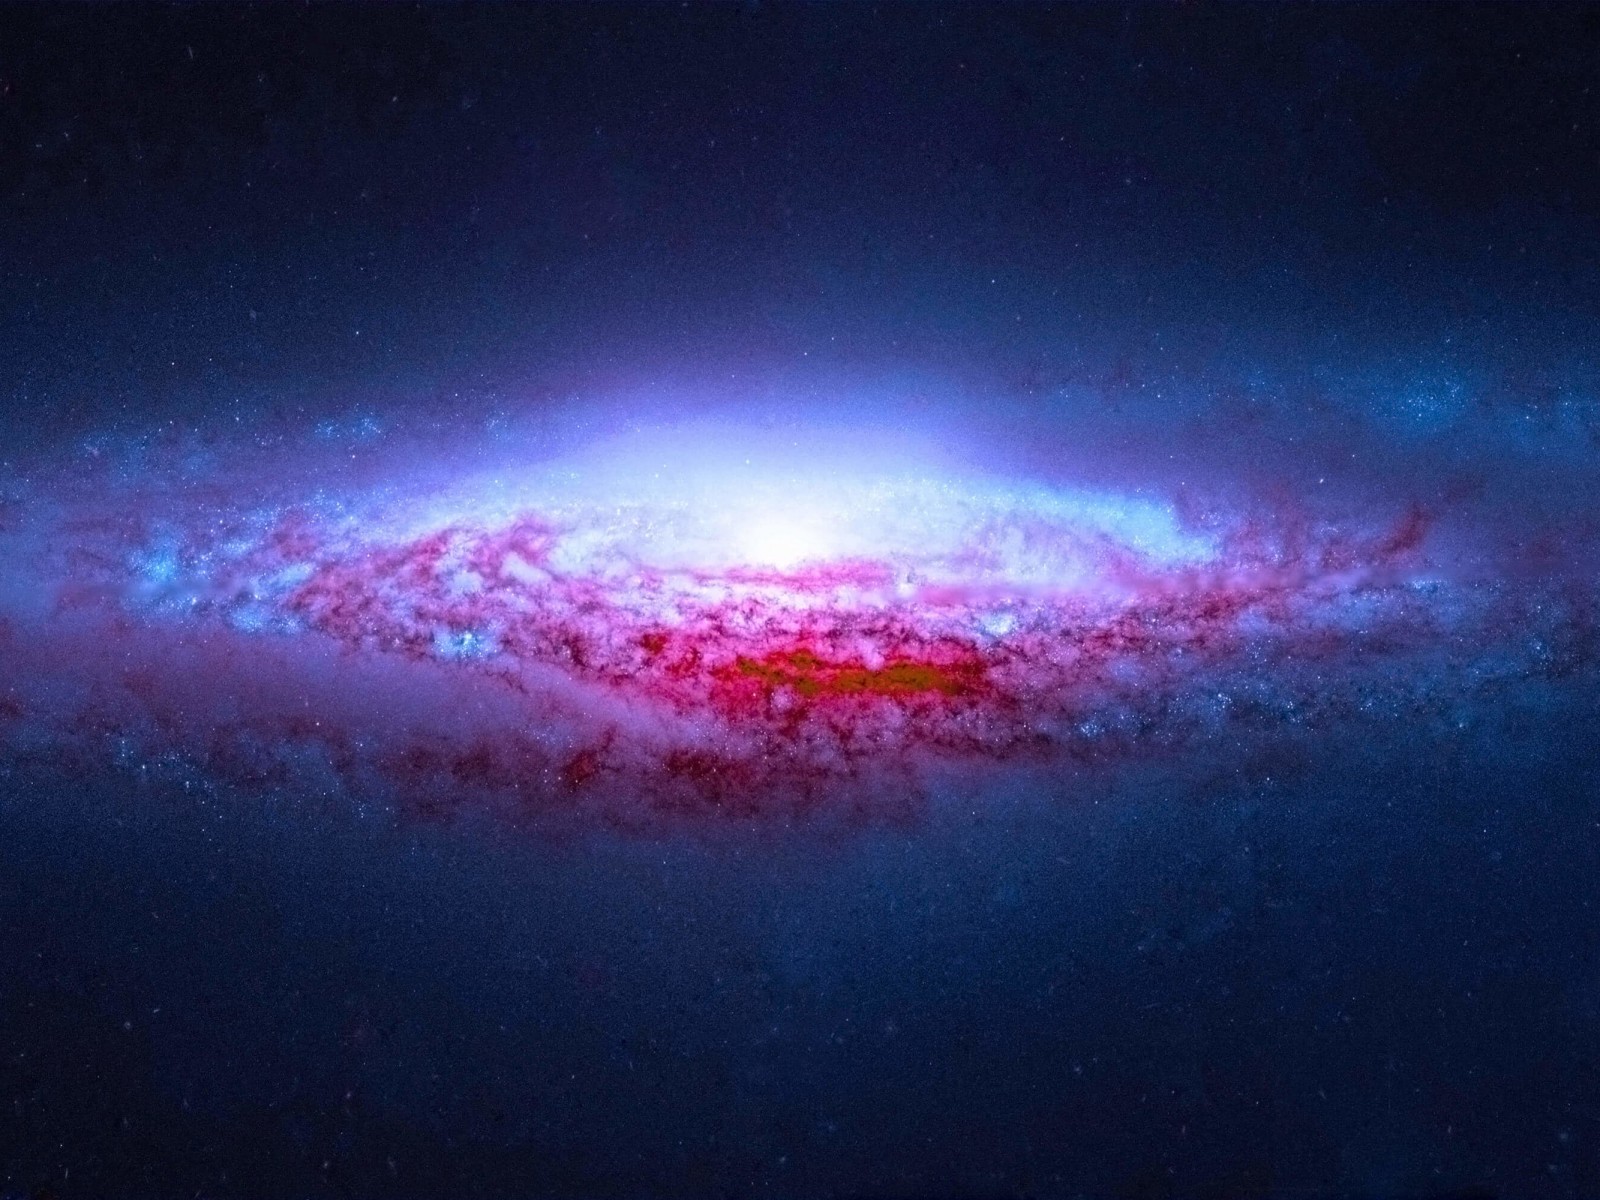 NGC 2683 Spiral Galaxy Wallpaper for Desktop 1600x1200